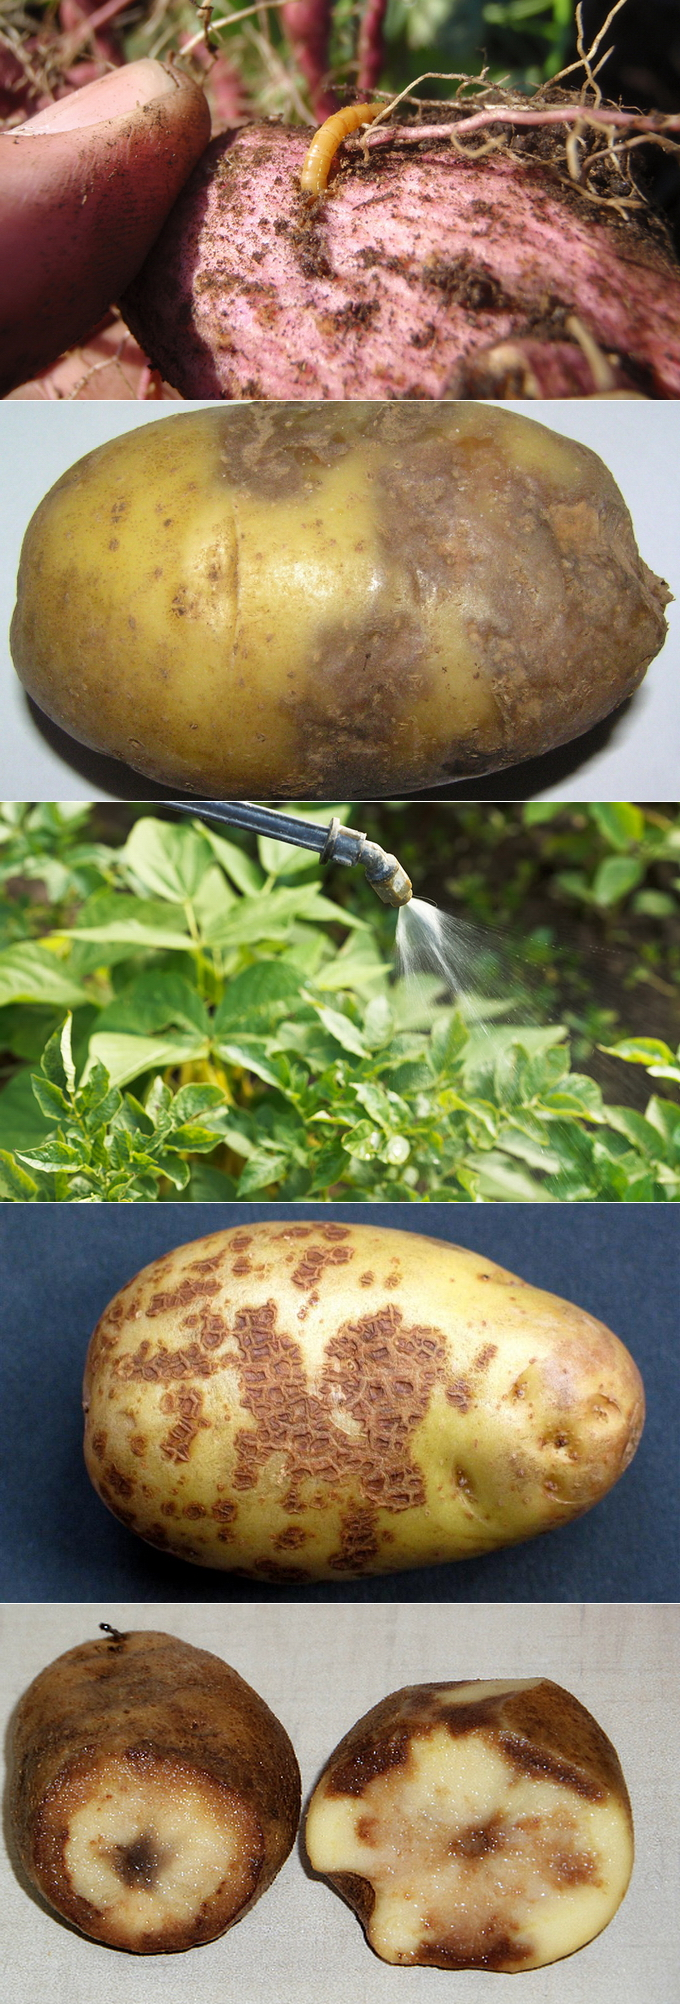 Болячки на картофельных клубнях